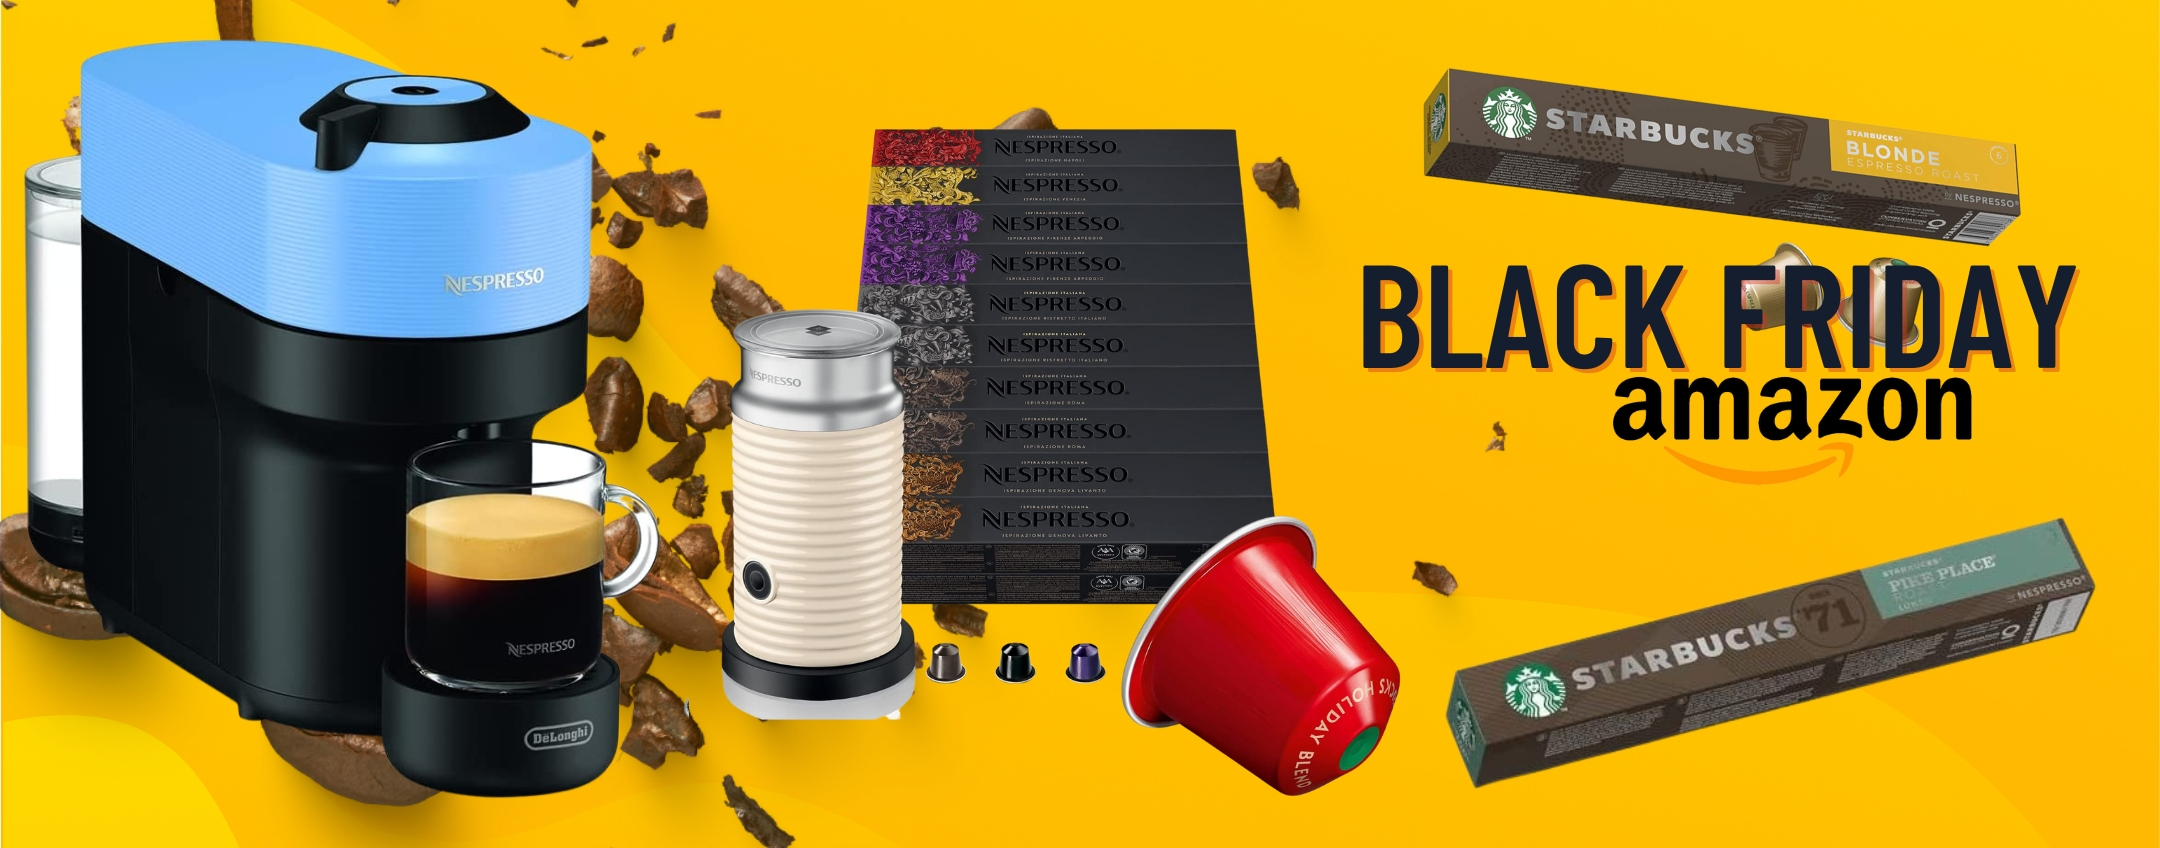 Black Friday Amazon: caffè di qualità e a prezzo RIDICOLO con Nespresso